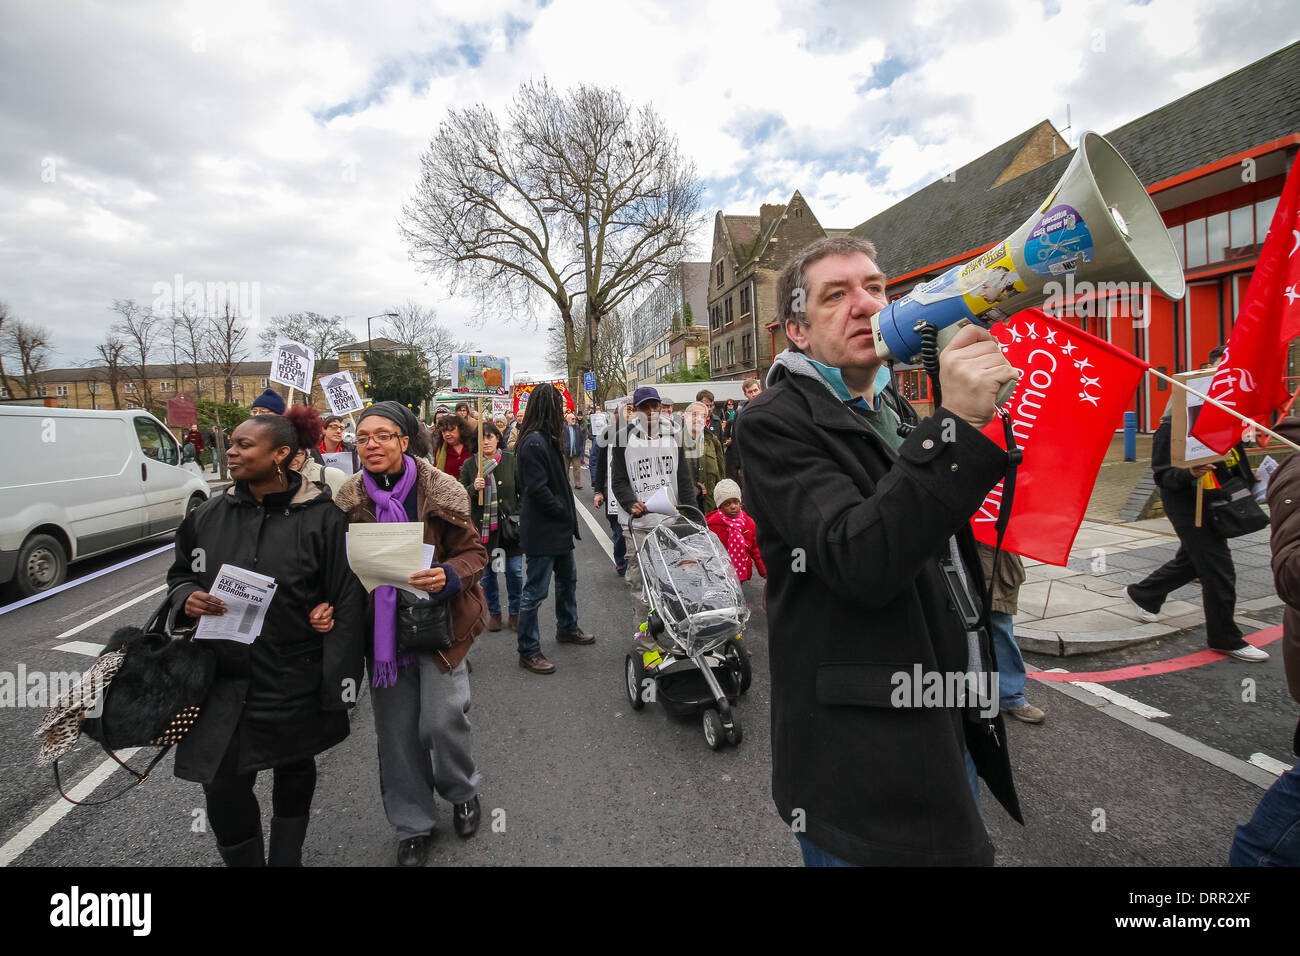 "El impuesto de la habitación - no desalojos" protesta marcha y manifestación en Peckham, Londres, Reino Unido Foto de stock